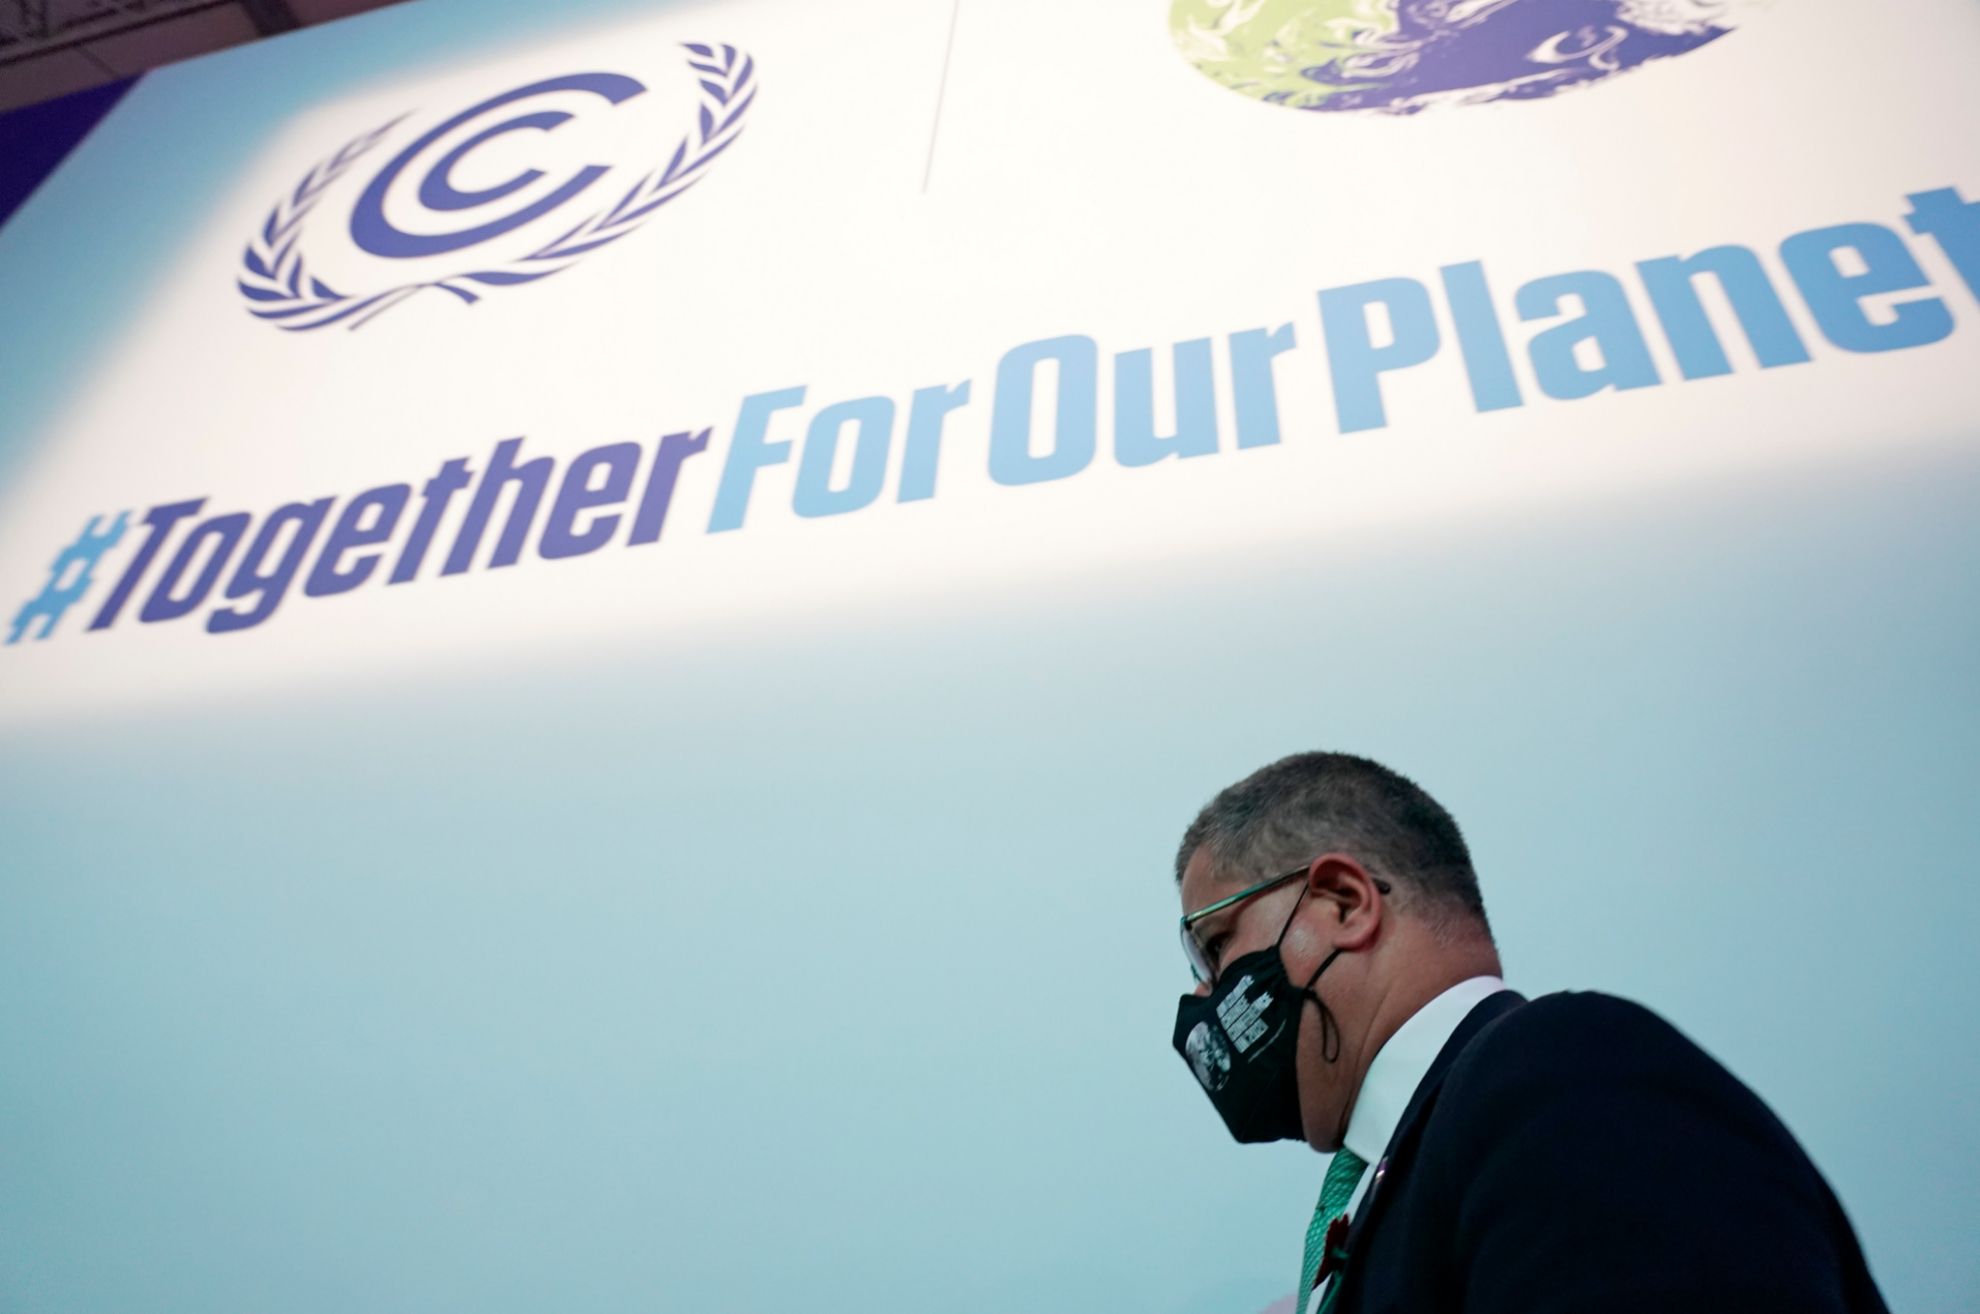 COP26 - Cumbre del Clima - acuerdo coches combustion - coches cero emisiones - 2035 - 2040